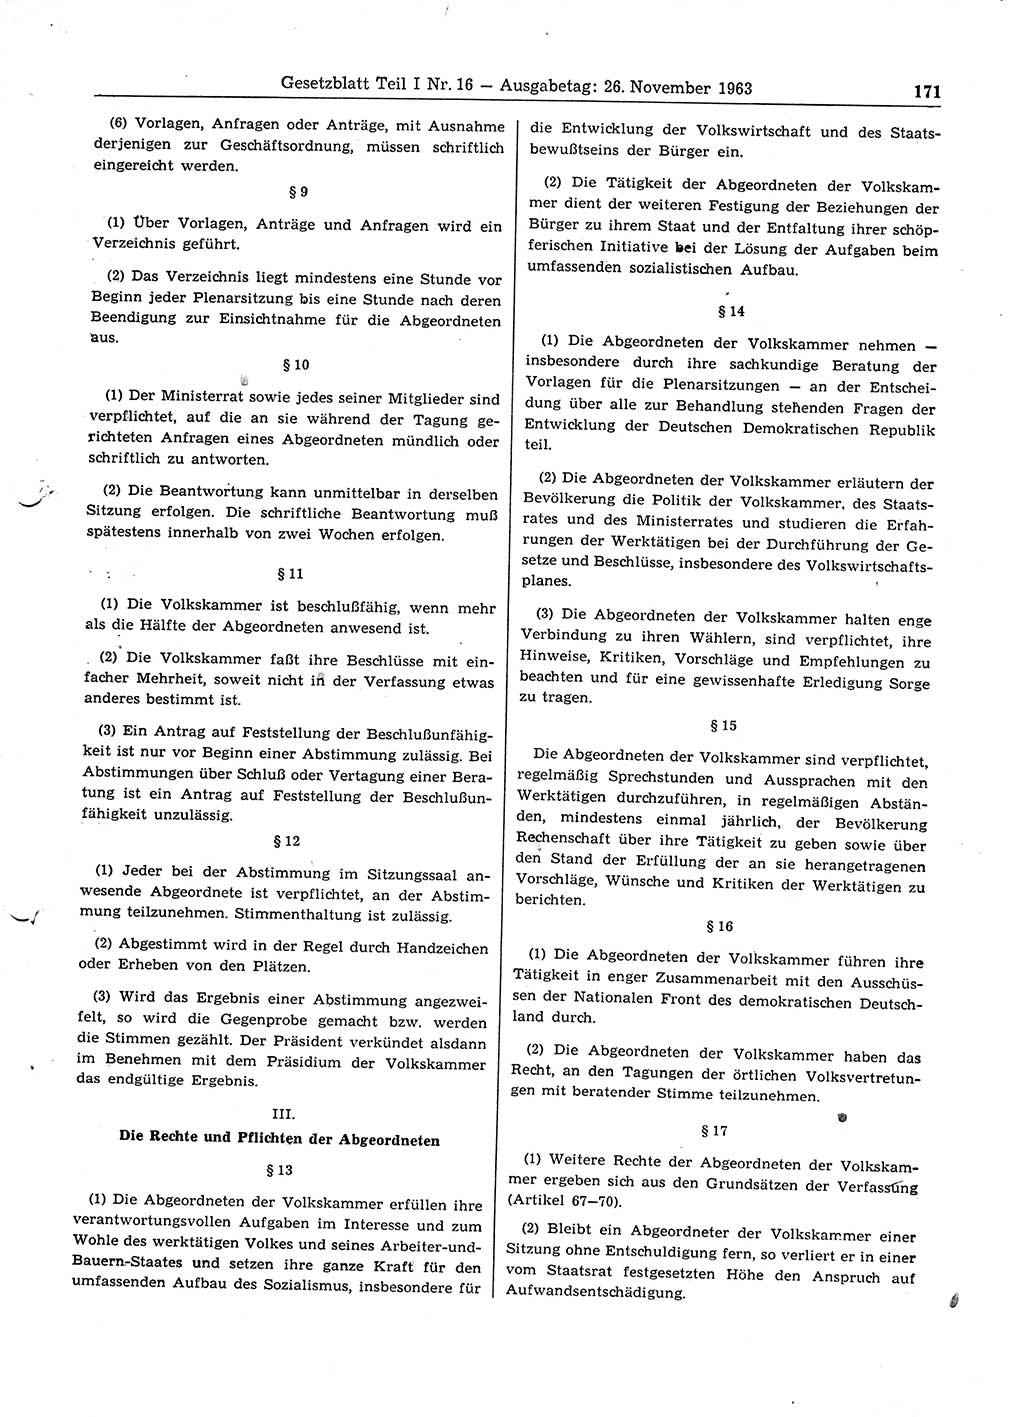 Gesetzblatt (GBl.) der Deutschen Demokratischen Republik (DDR) Teil Ⅰ 1963, Seite 171 (GBl. DDR Ⅰ 1963, S. 171)